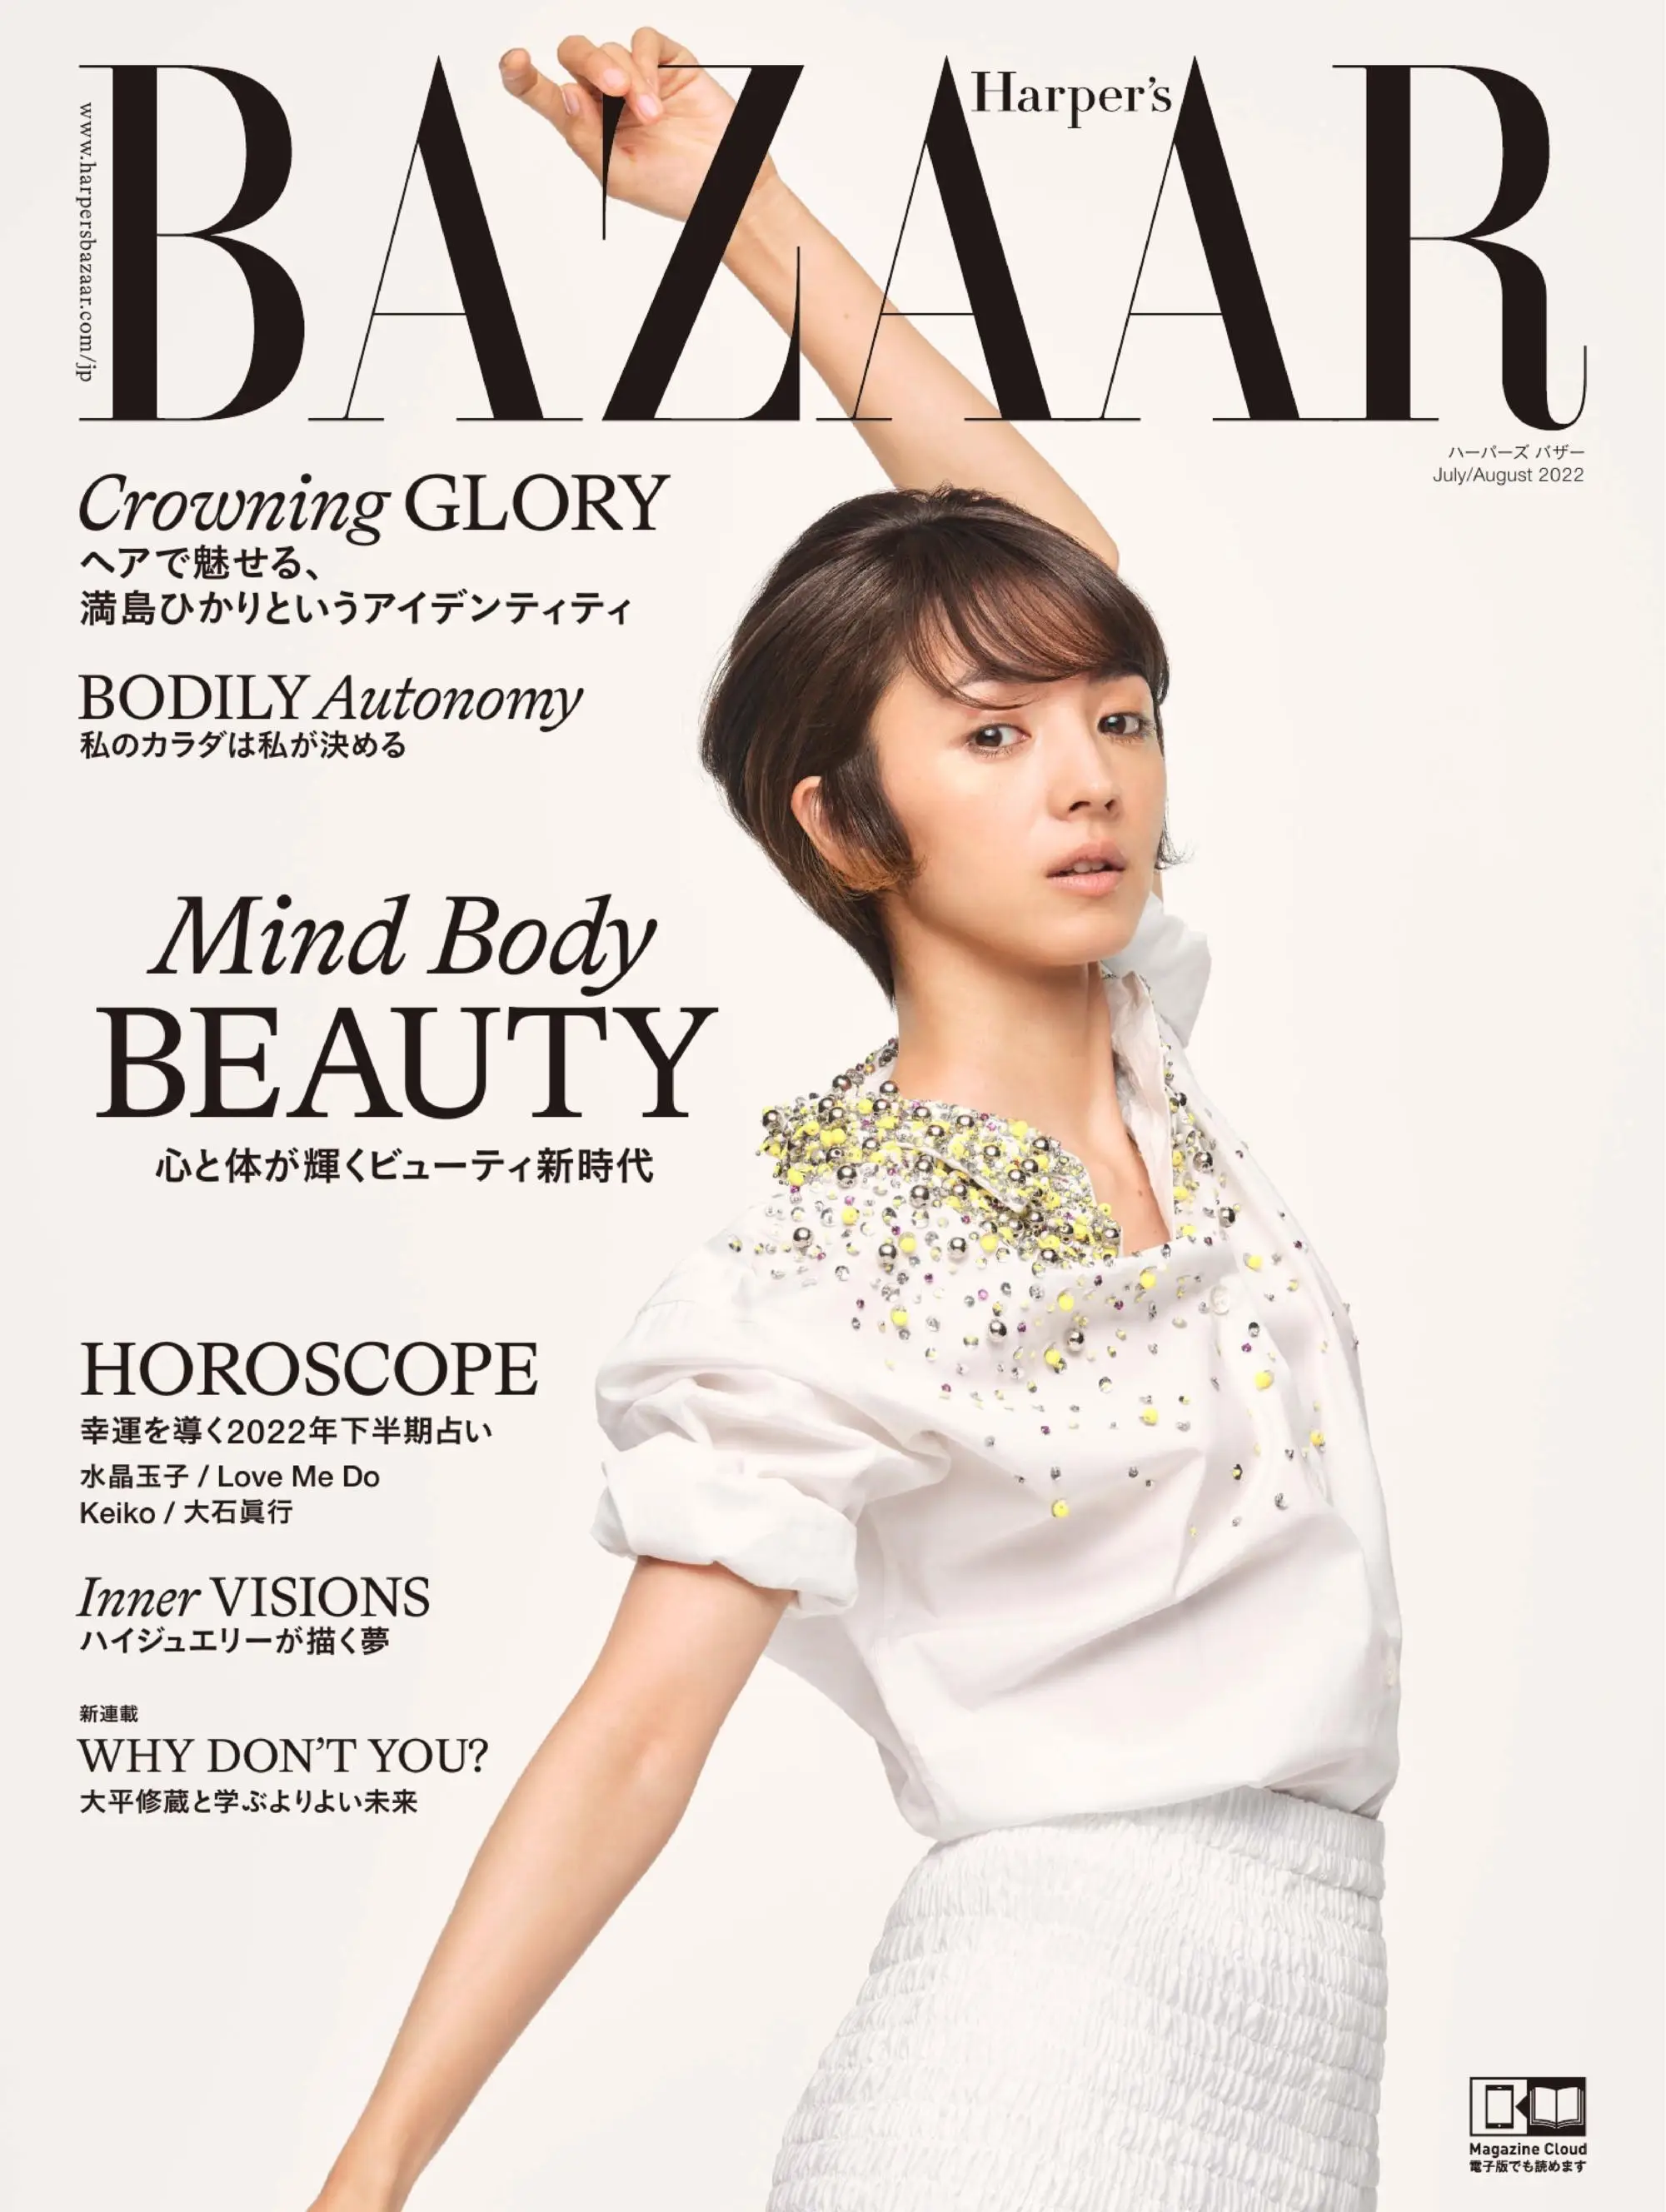 ハーパーズ バザー Harper’s Bazaar Japan – 5月 2022